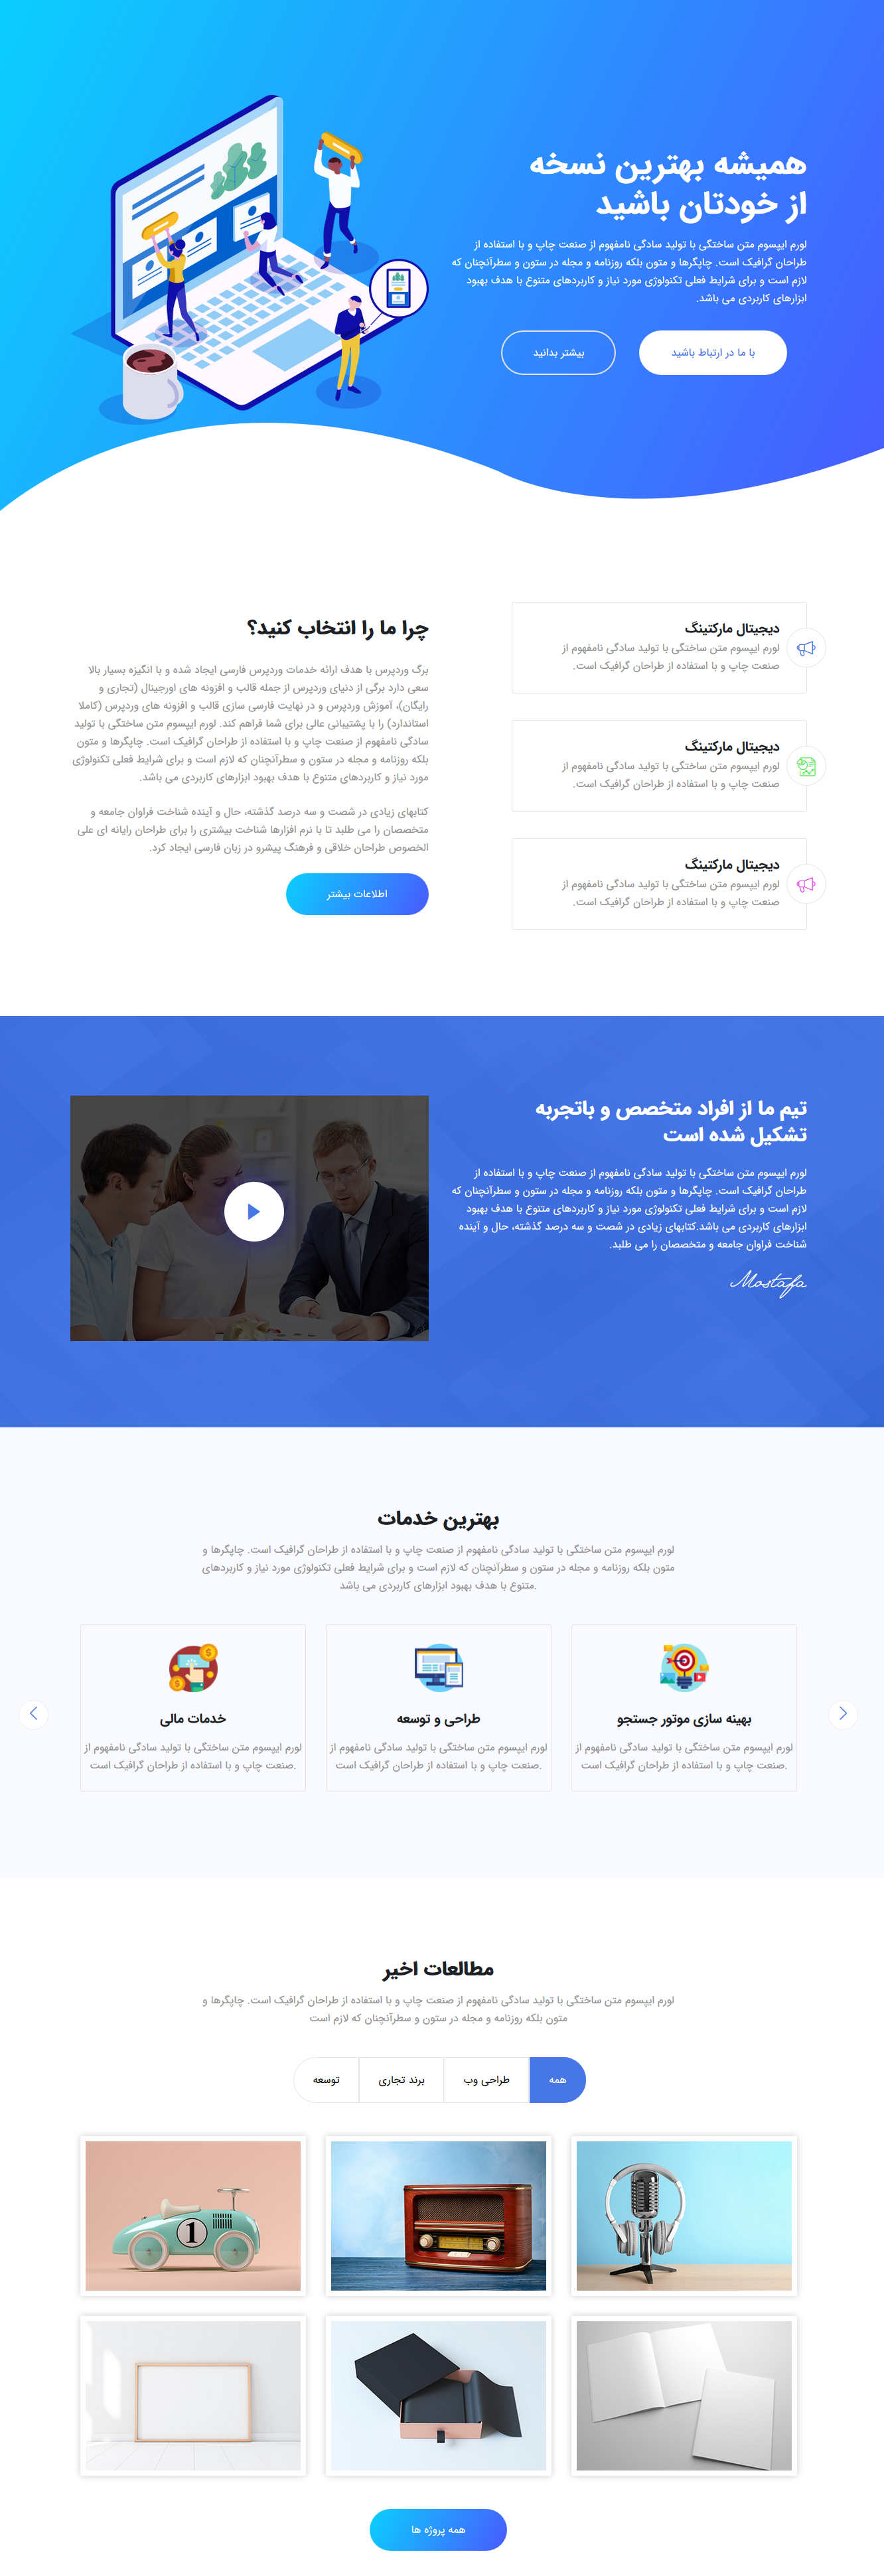 3 28 2019 11 34 46 AM - قالب HTML تک صفحه ای فارسی Miyami نسخه 1.3